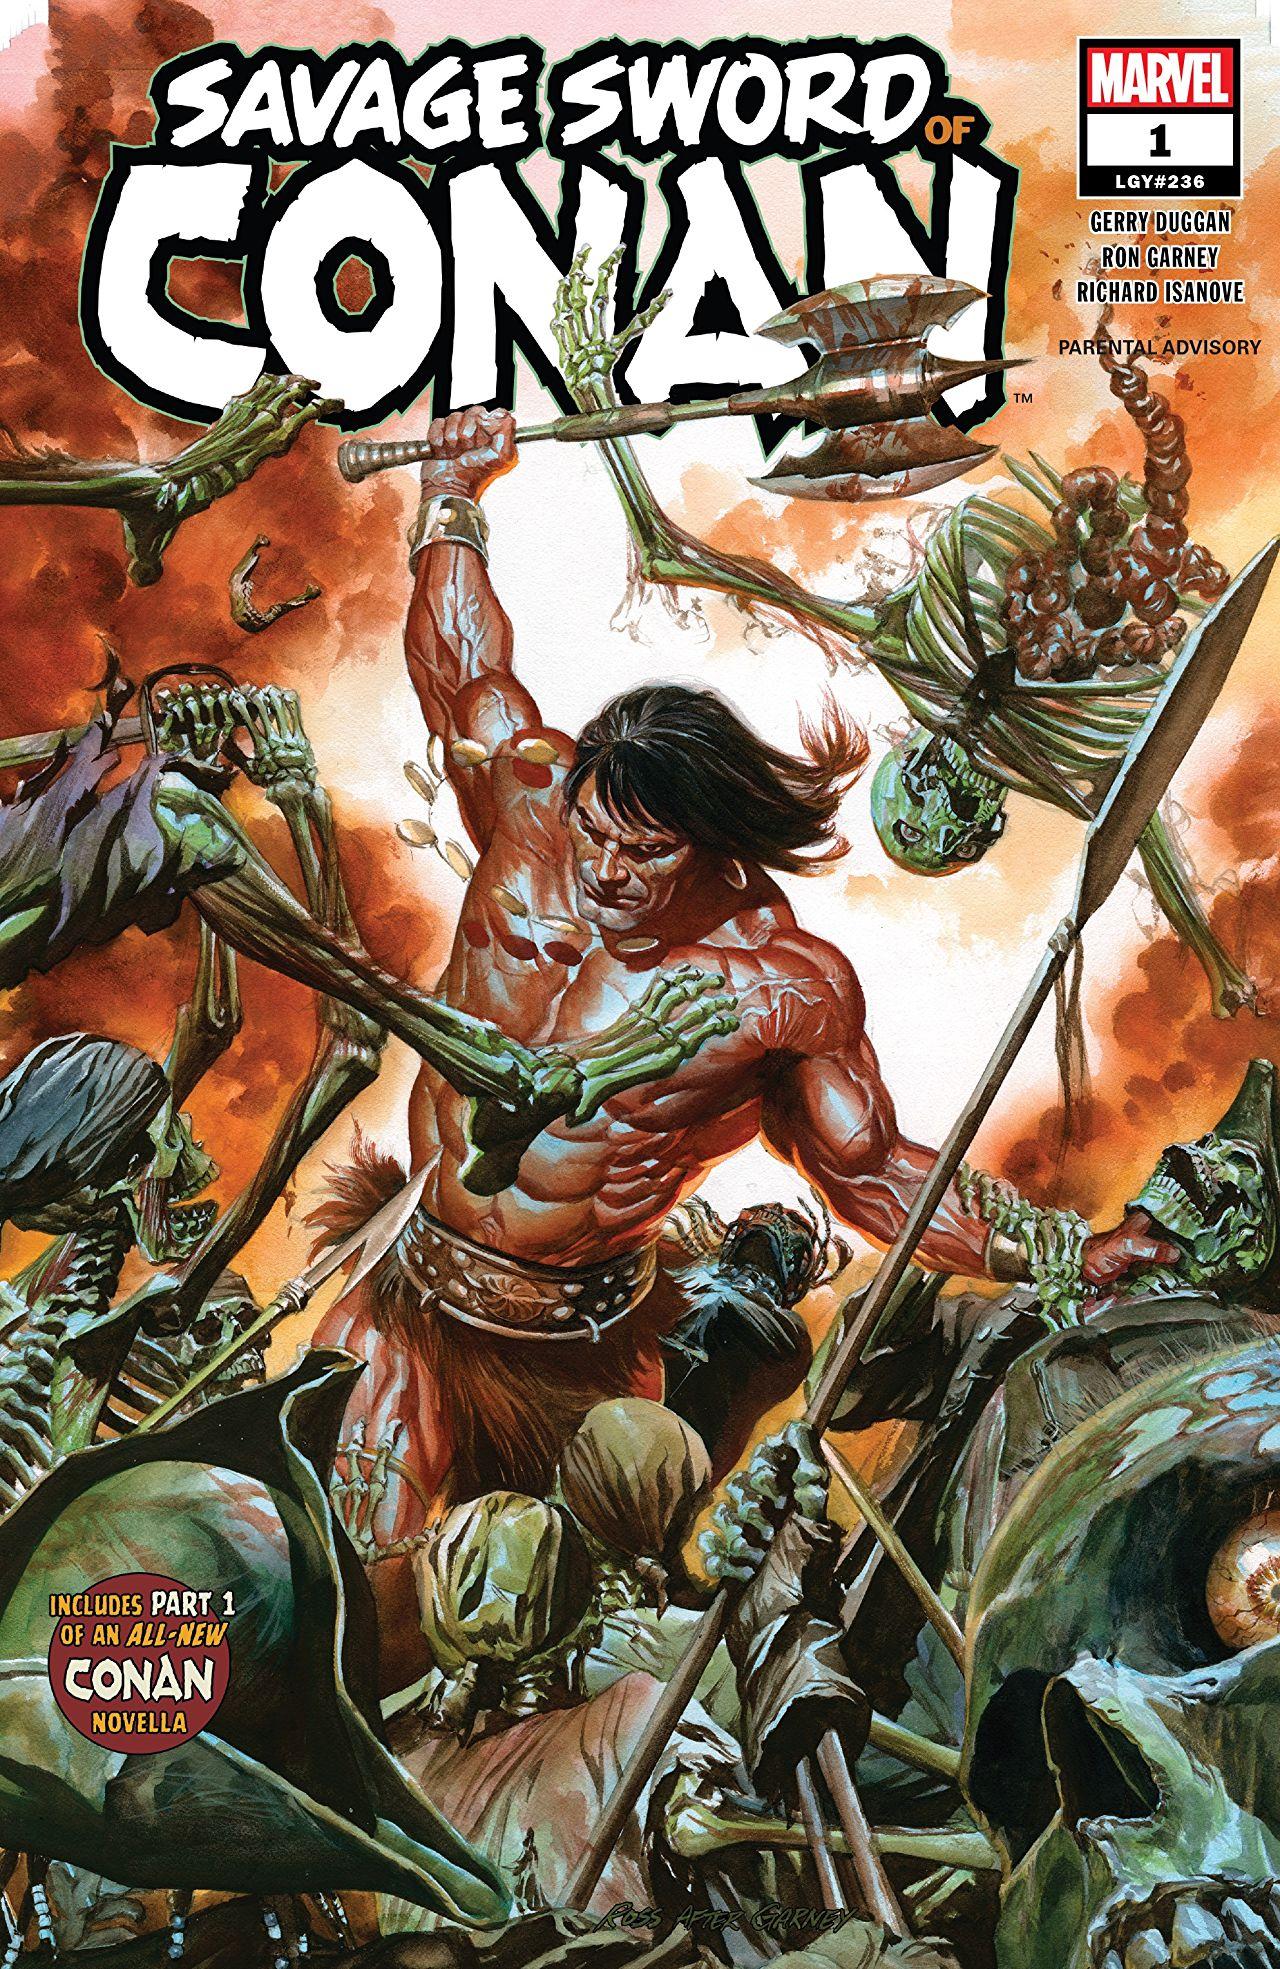 Savage Sword of Conan Vol. 2 #1